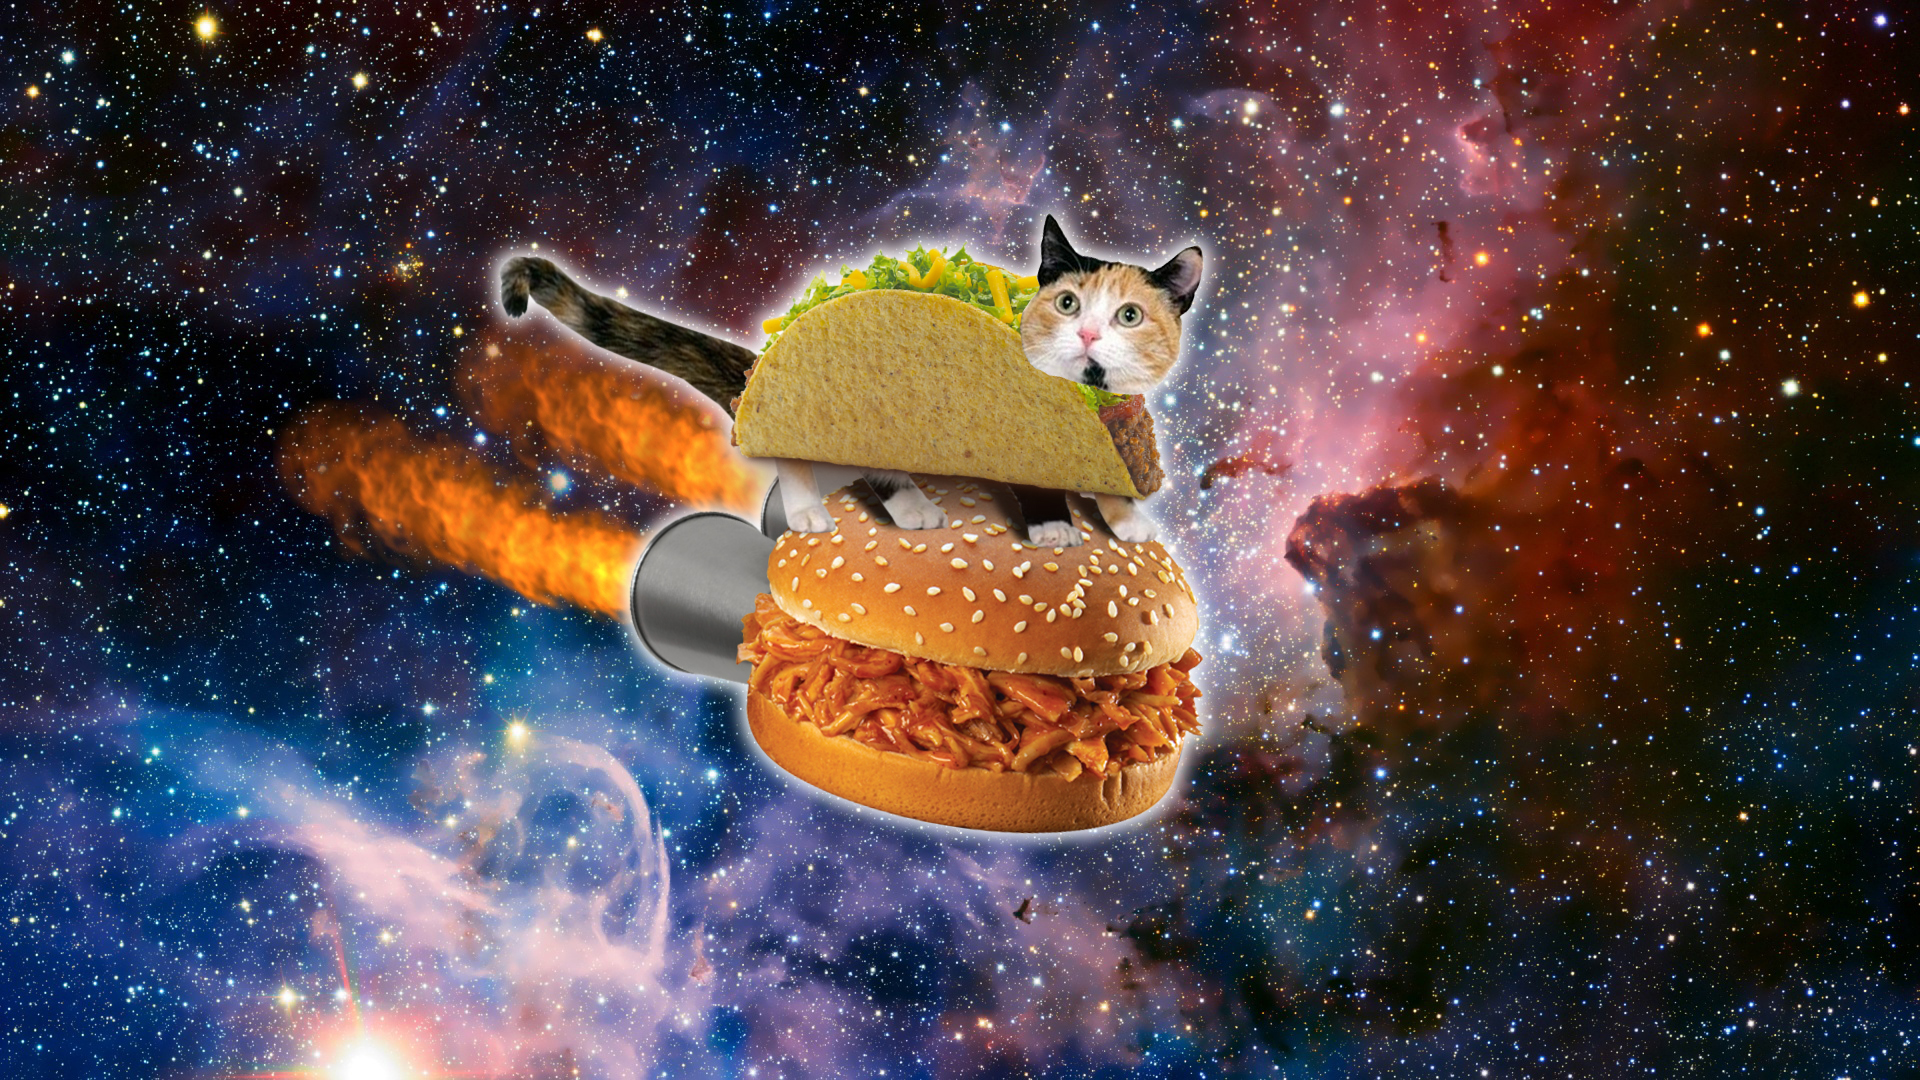 Space cat wallpaper